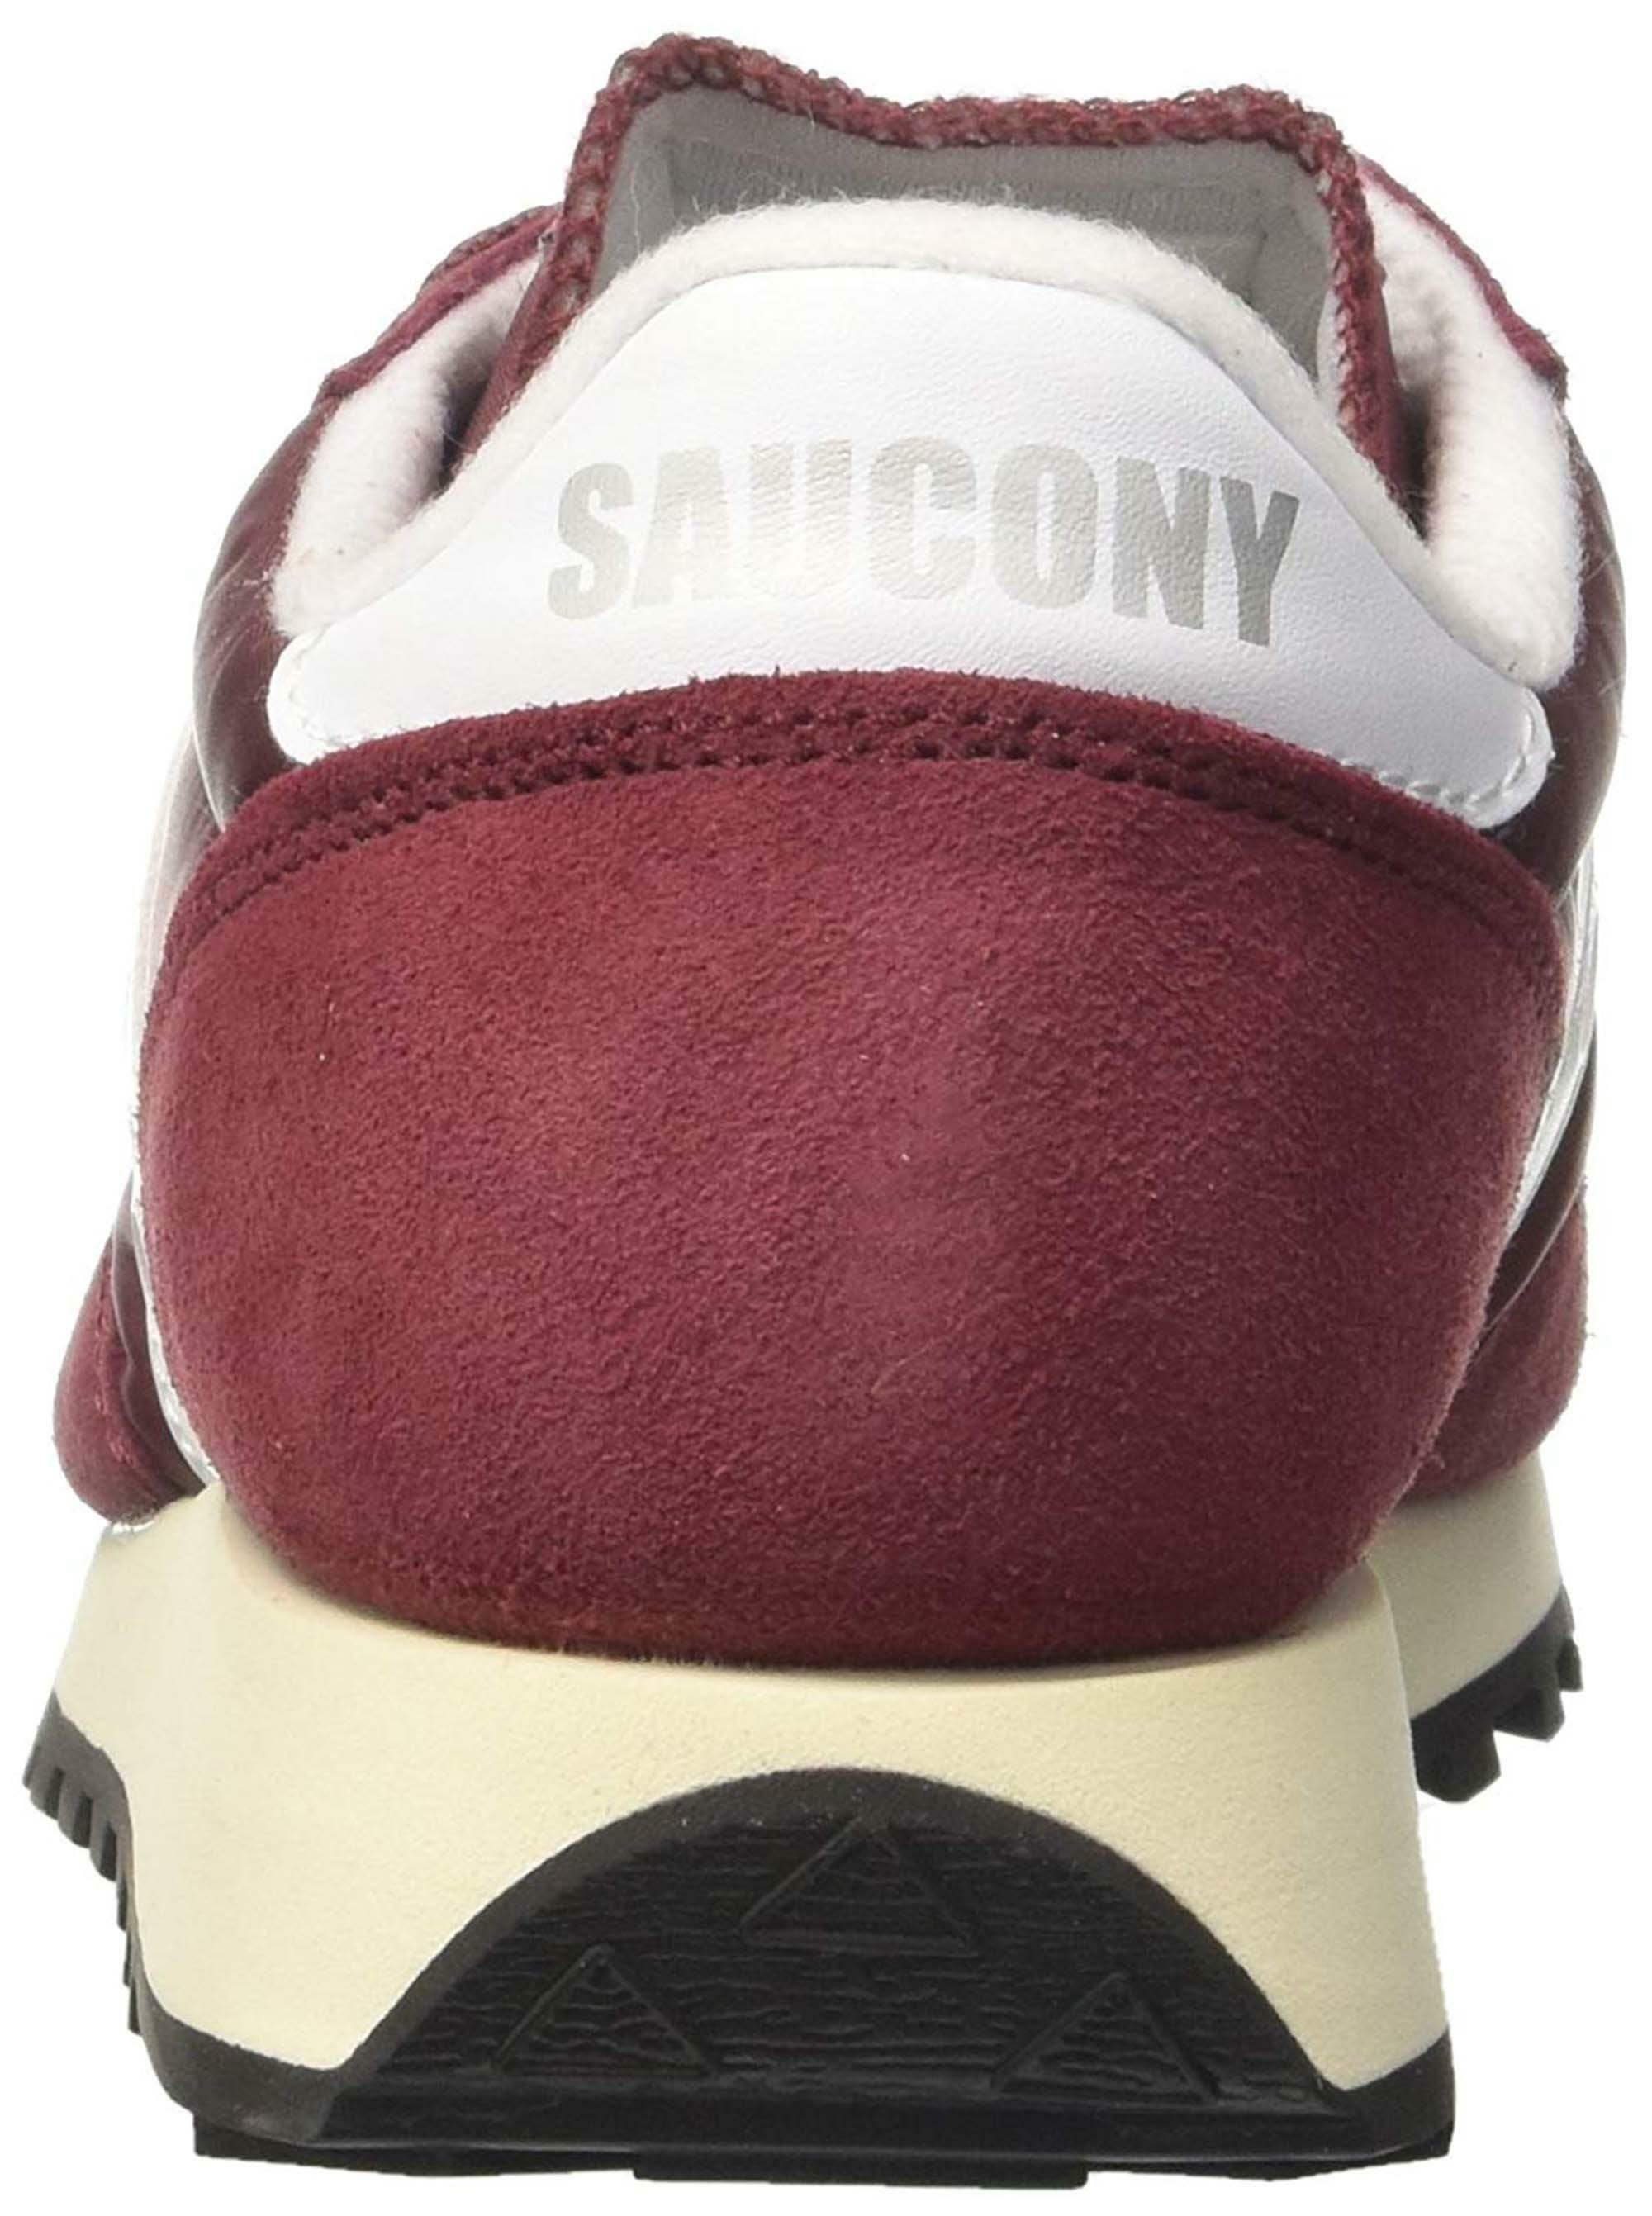 saucony saucony jazz original vintage scarpe sportive donna bordeaux s6036827